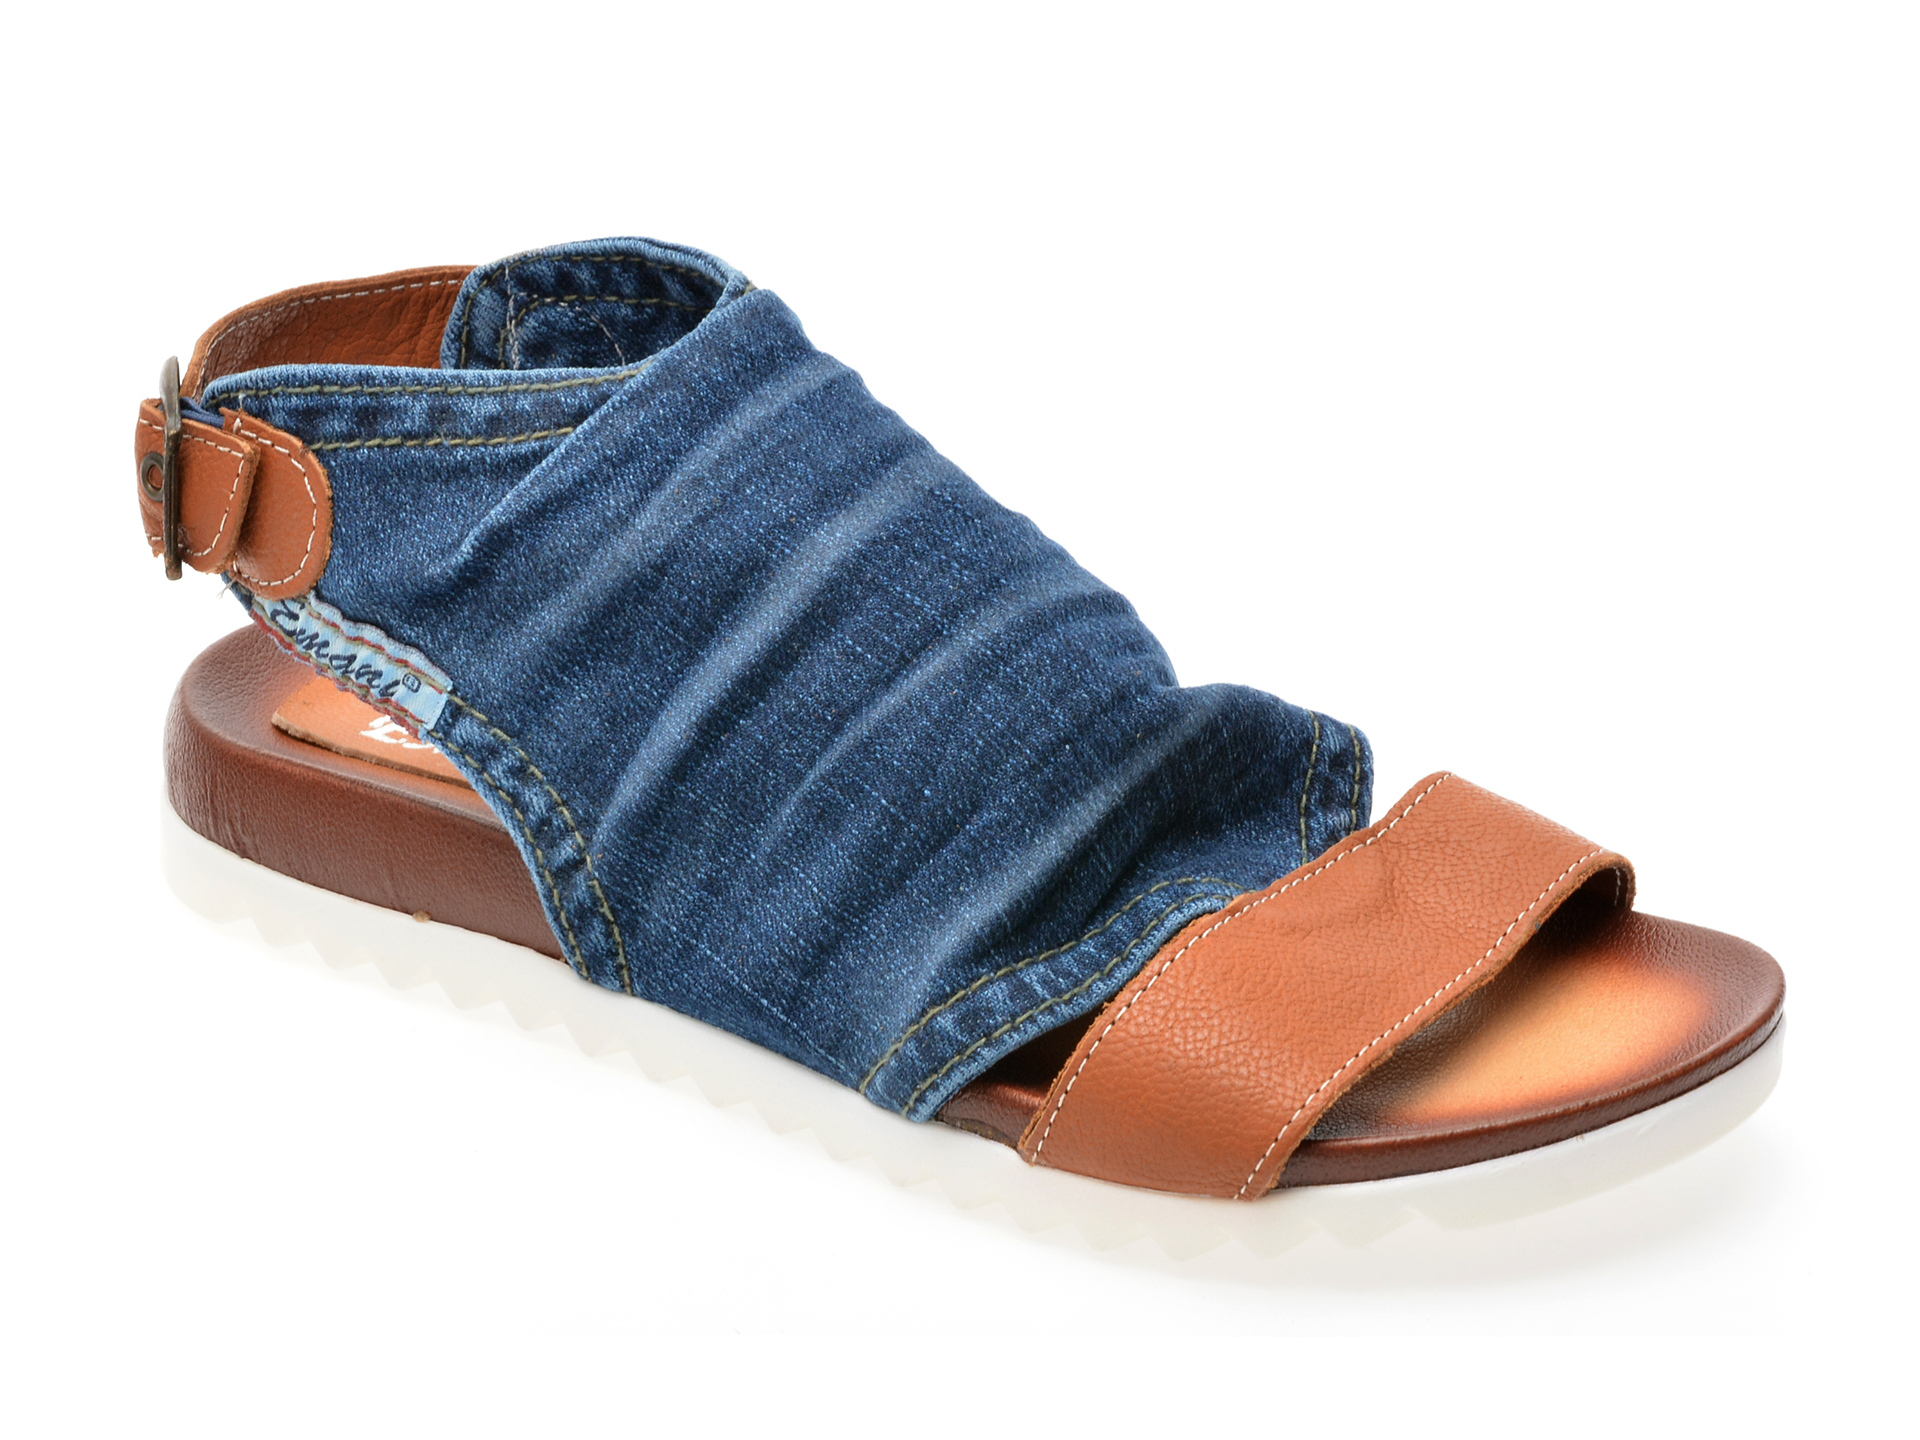 Sandale EMANI albastre, 2026, din material textil EMANI